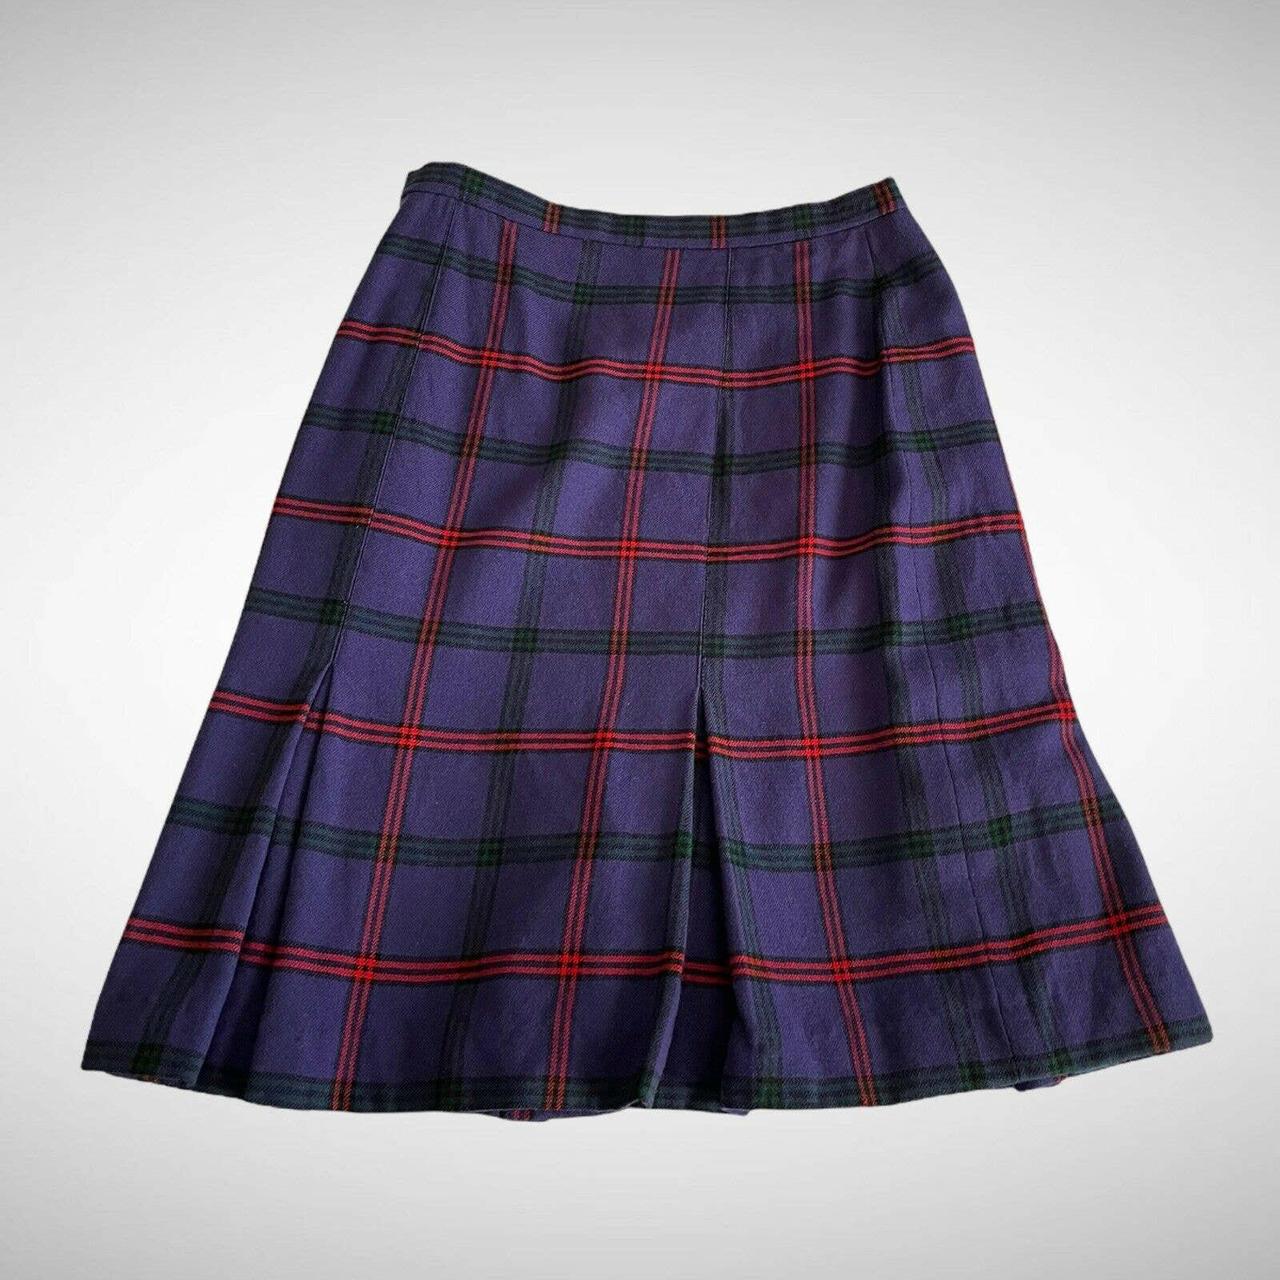 Vintage plaid purple pleated skirt - most likely... - Depop